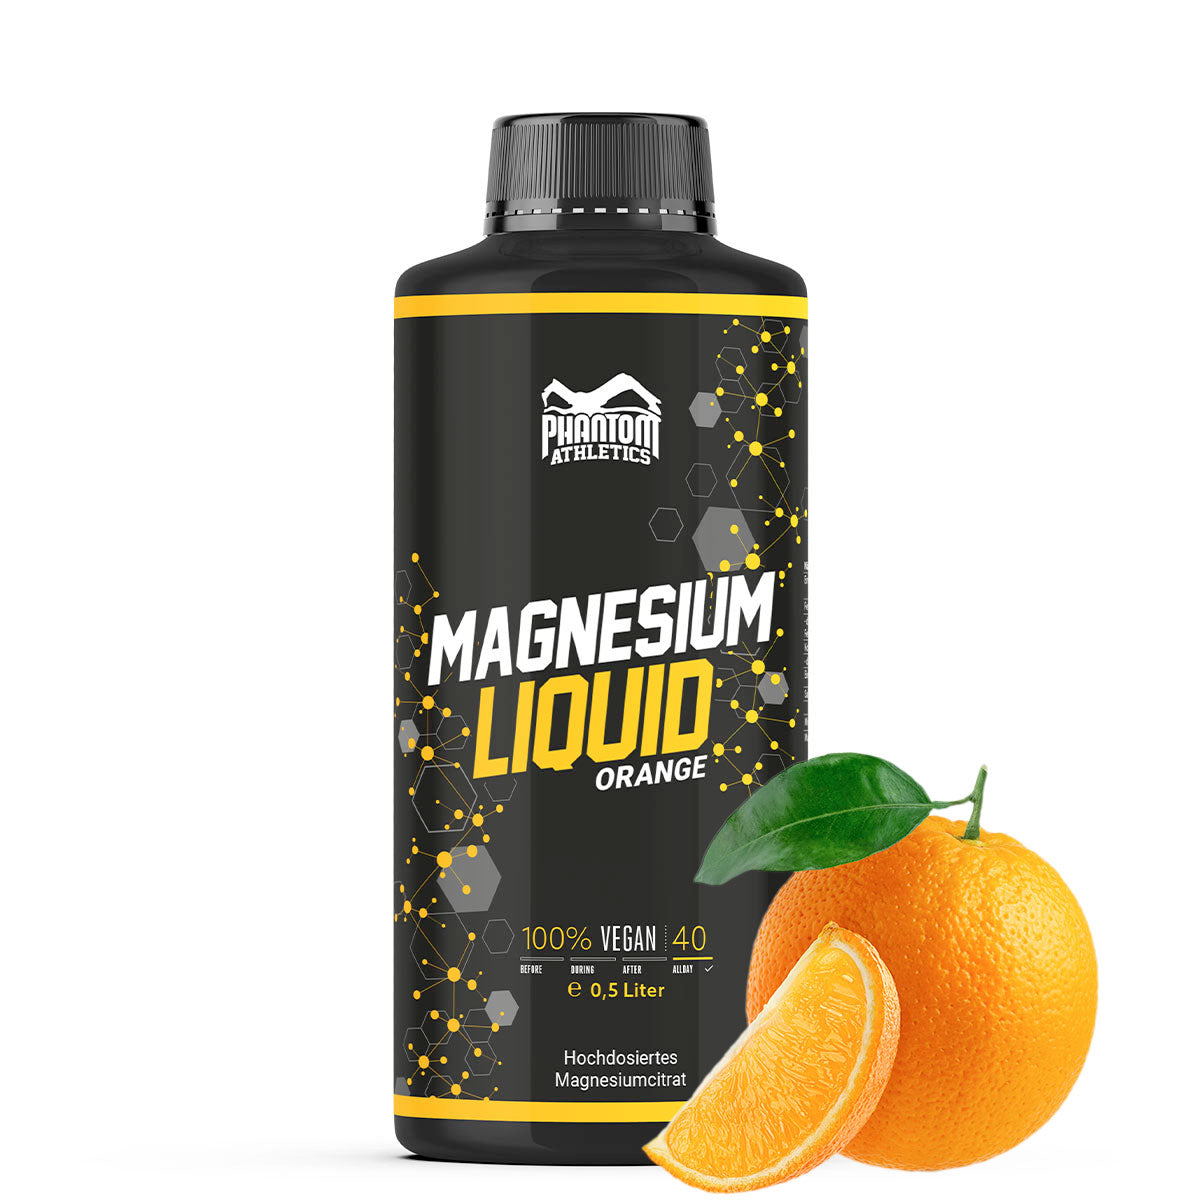 Phantom Magnesium Liquid - Liquid magnesium for better regeneration in martial arts.